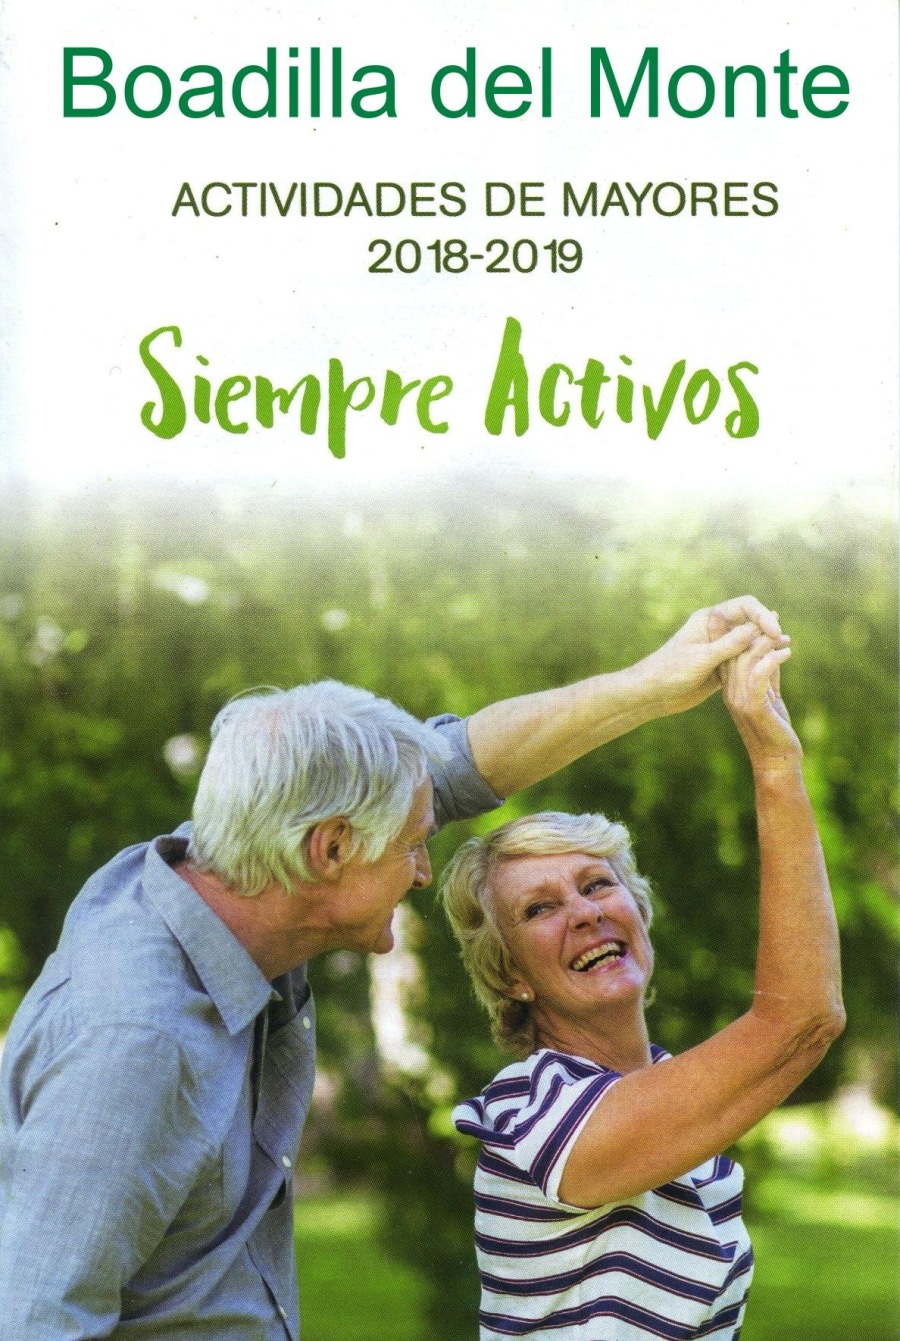 Boadilla del Monte

ACTIVIDADES DE MAYORES
2018-2019

Siempre Activos